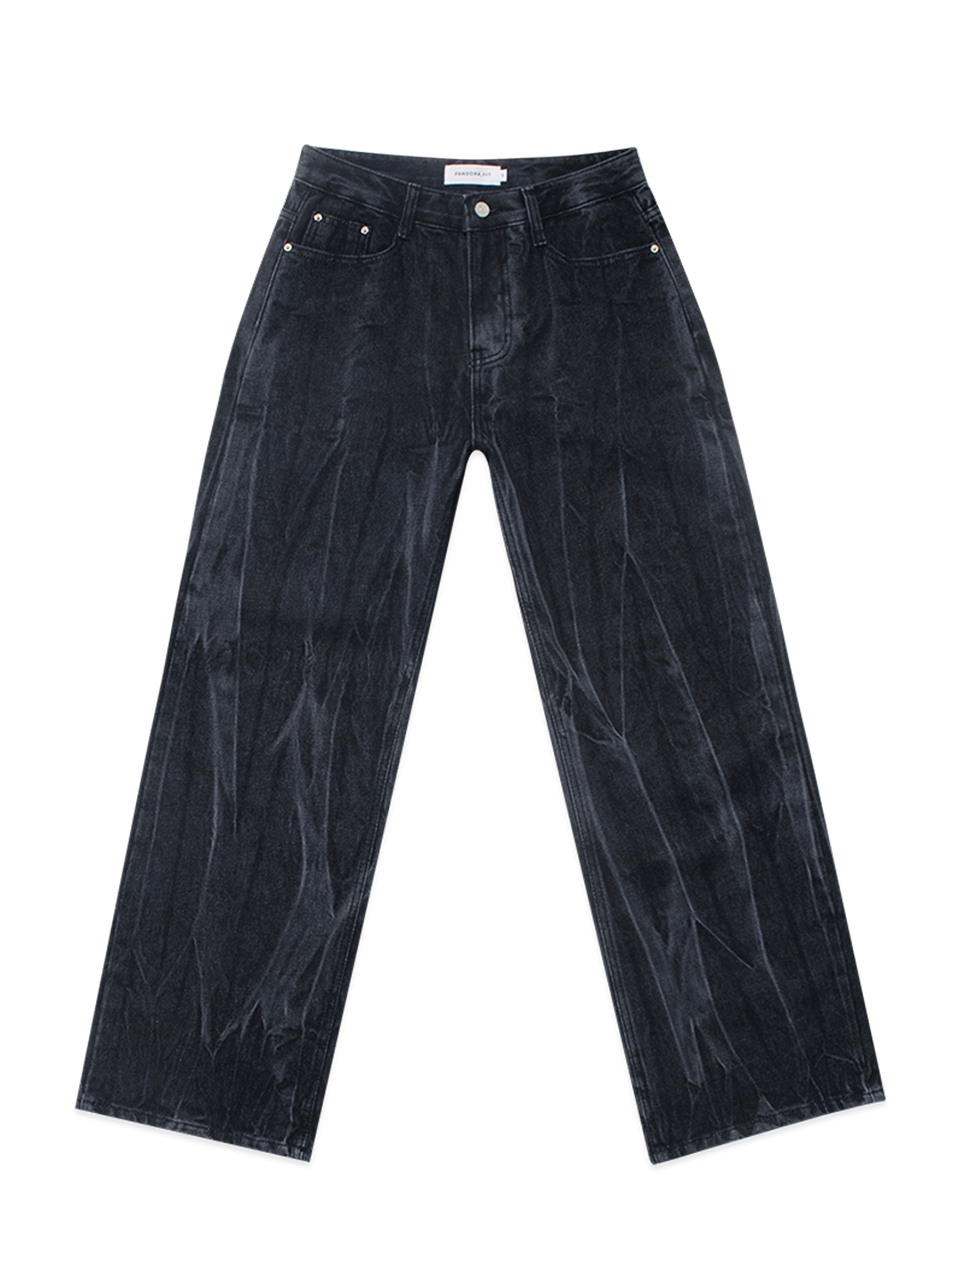 [WIDE] Black Jack Jeans